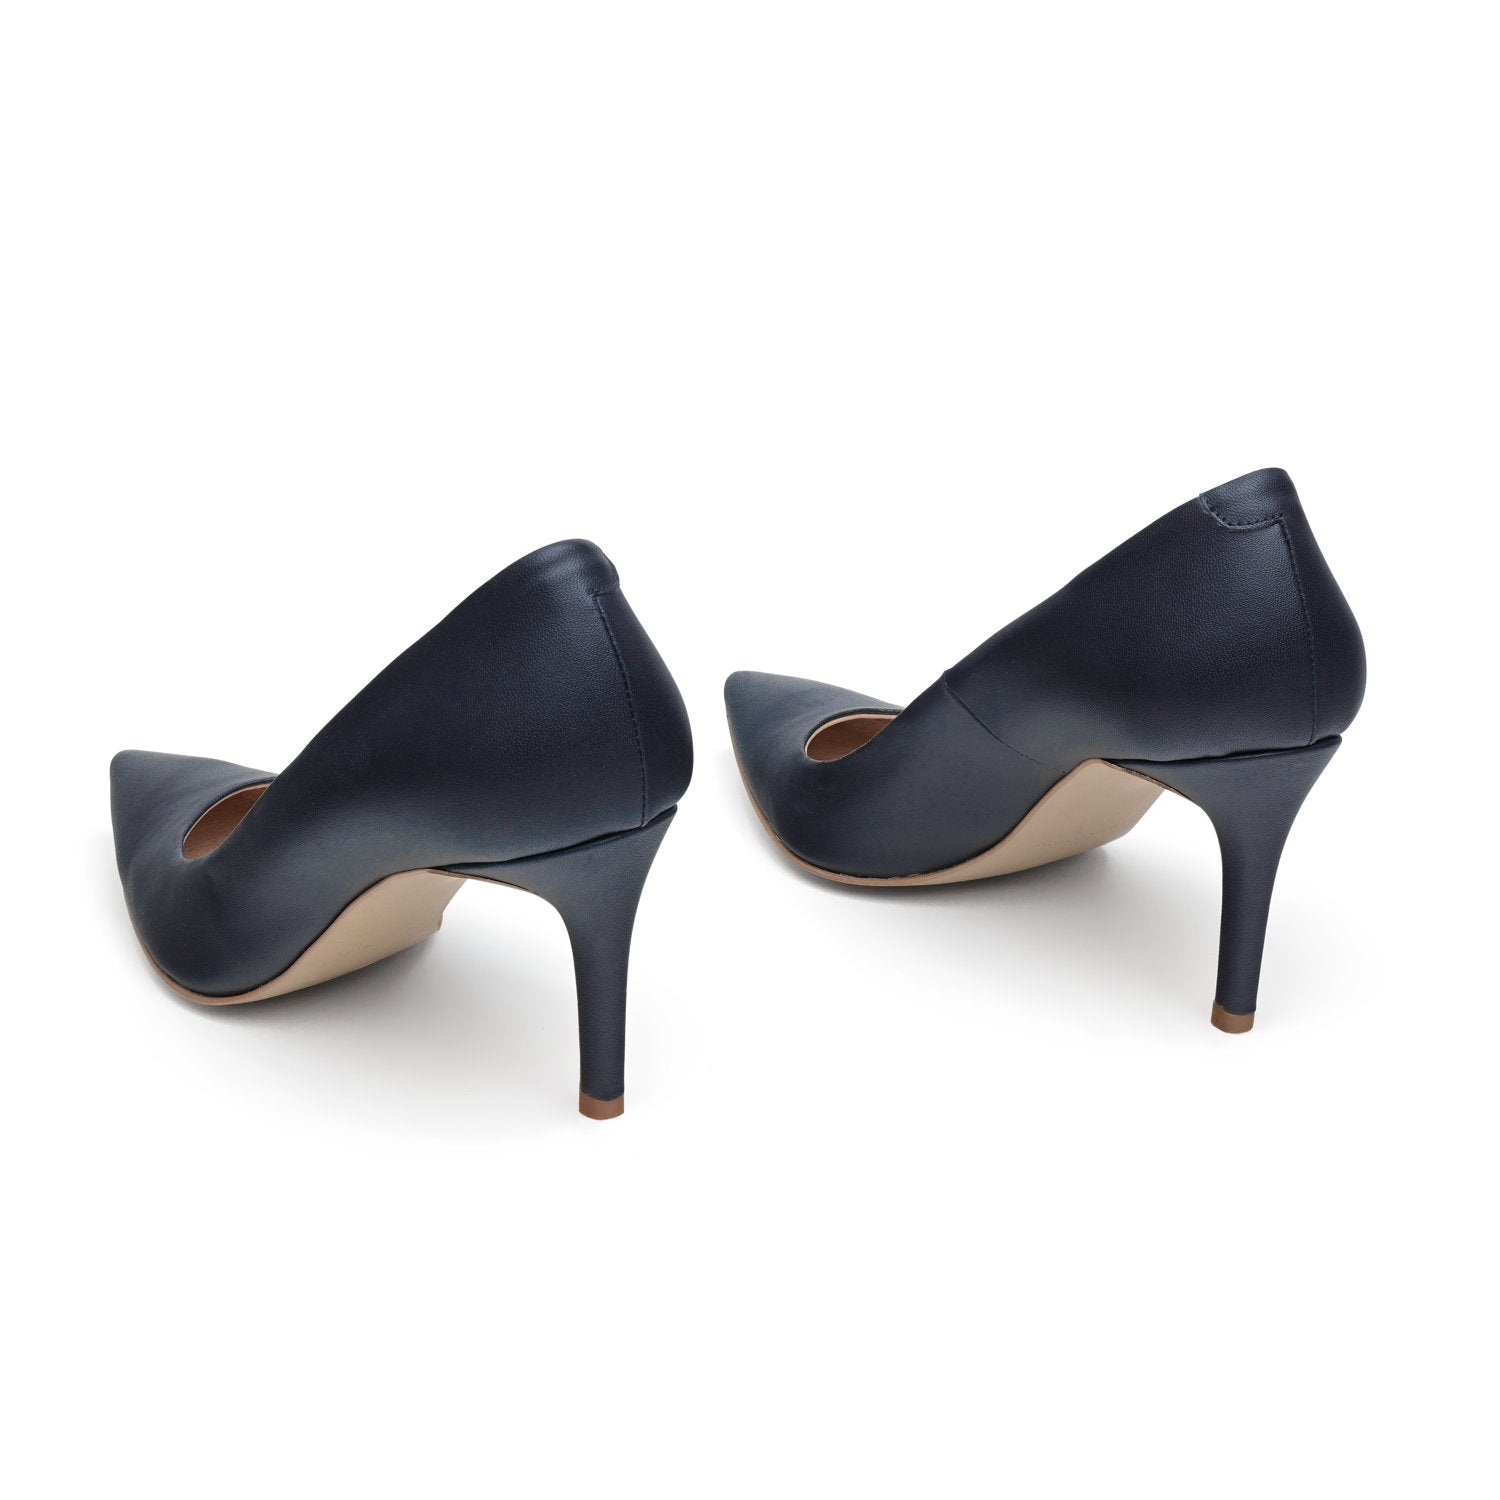 The Blue - vegan 70mm heels